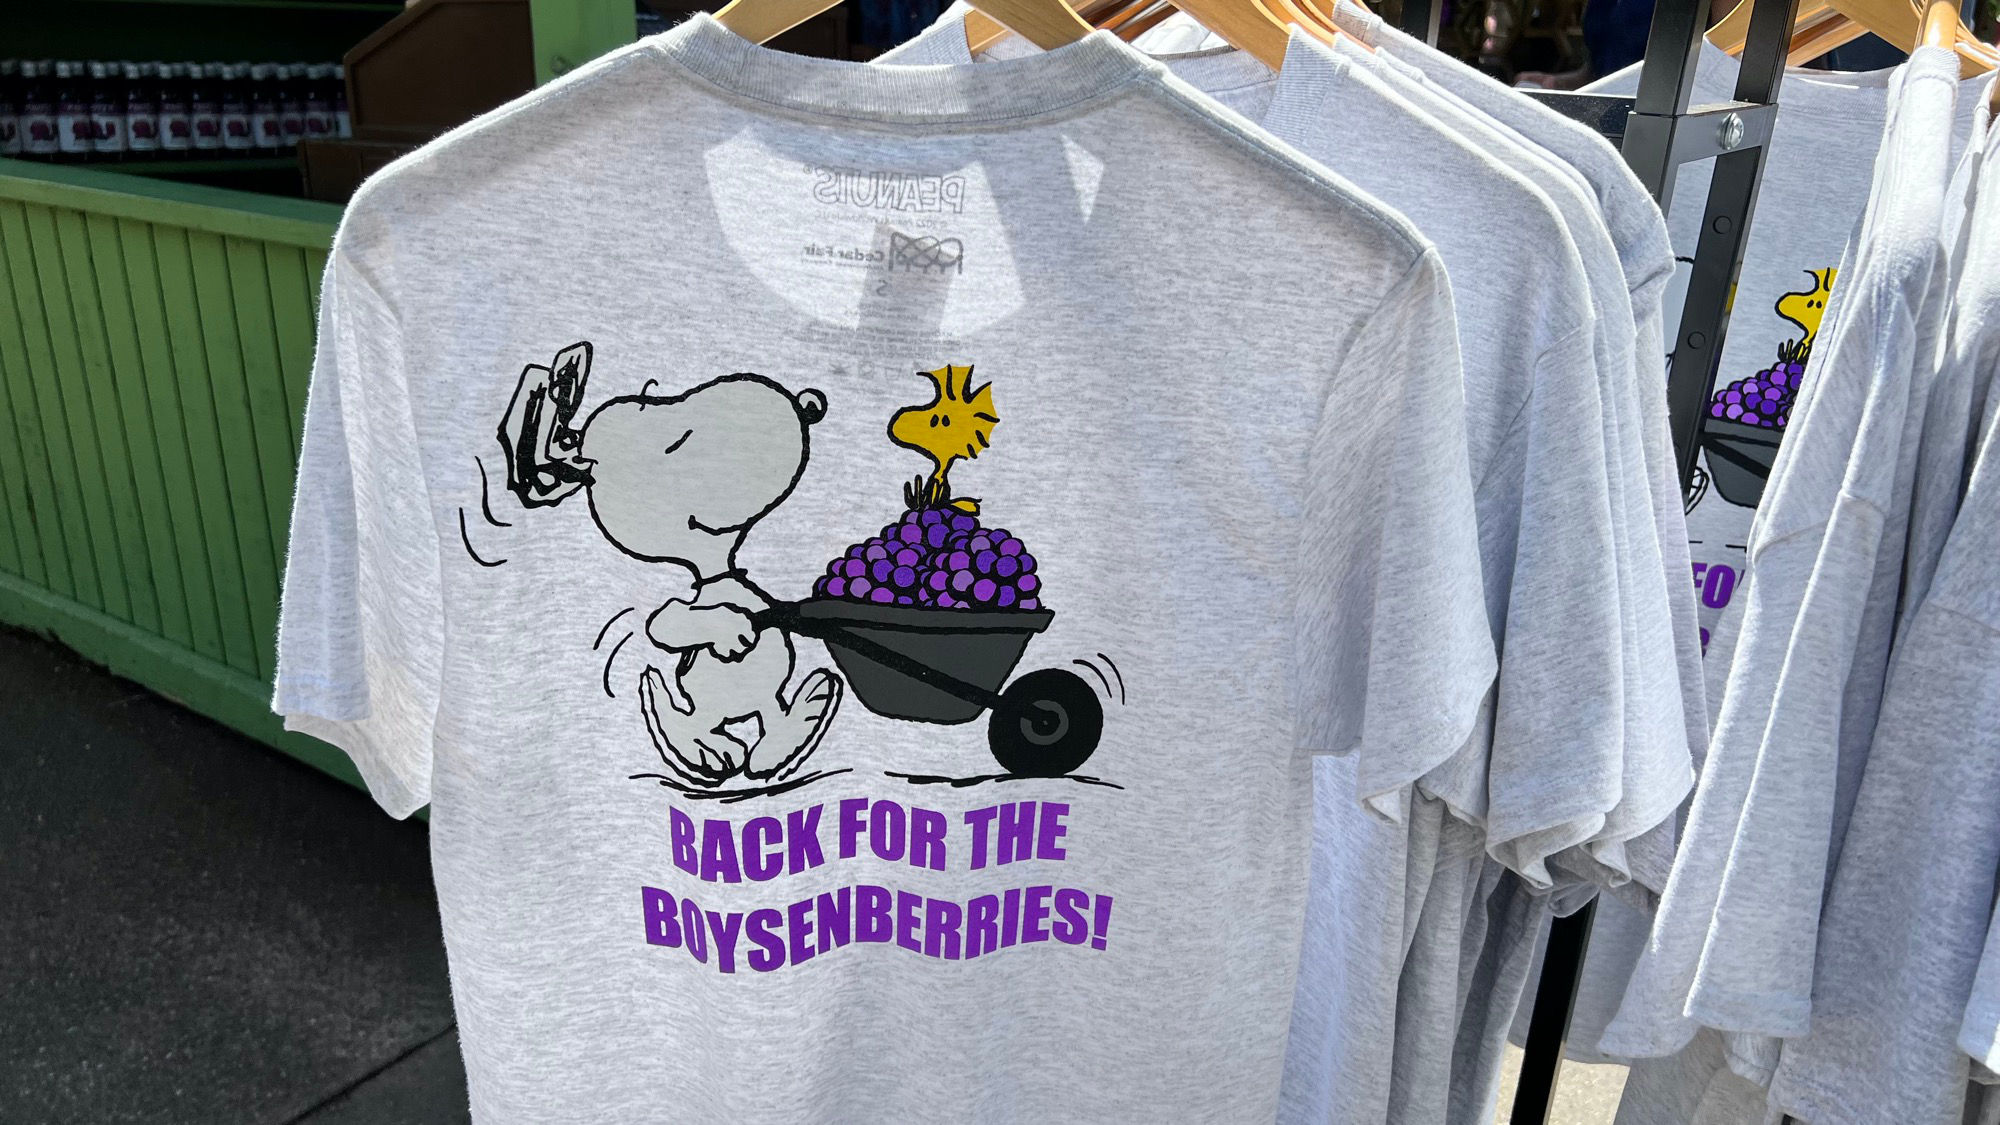 Boysenberry Festival Back for the Boysenberries Shirt